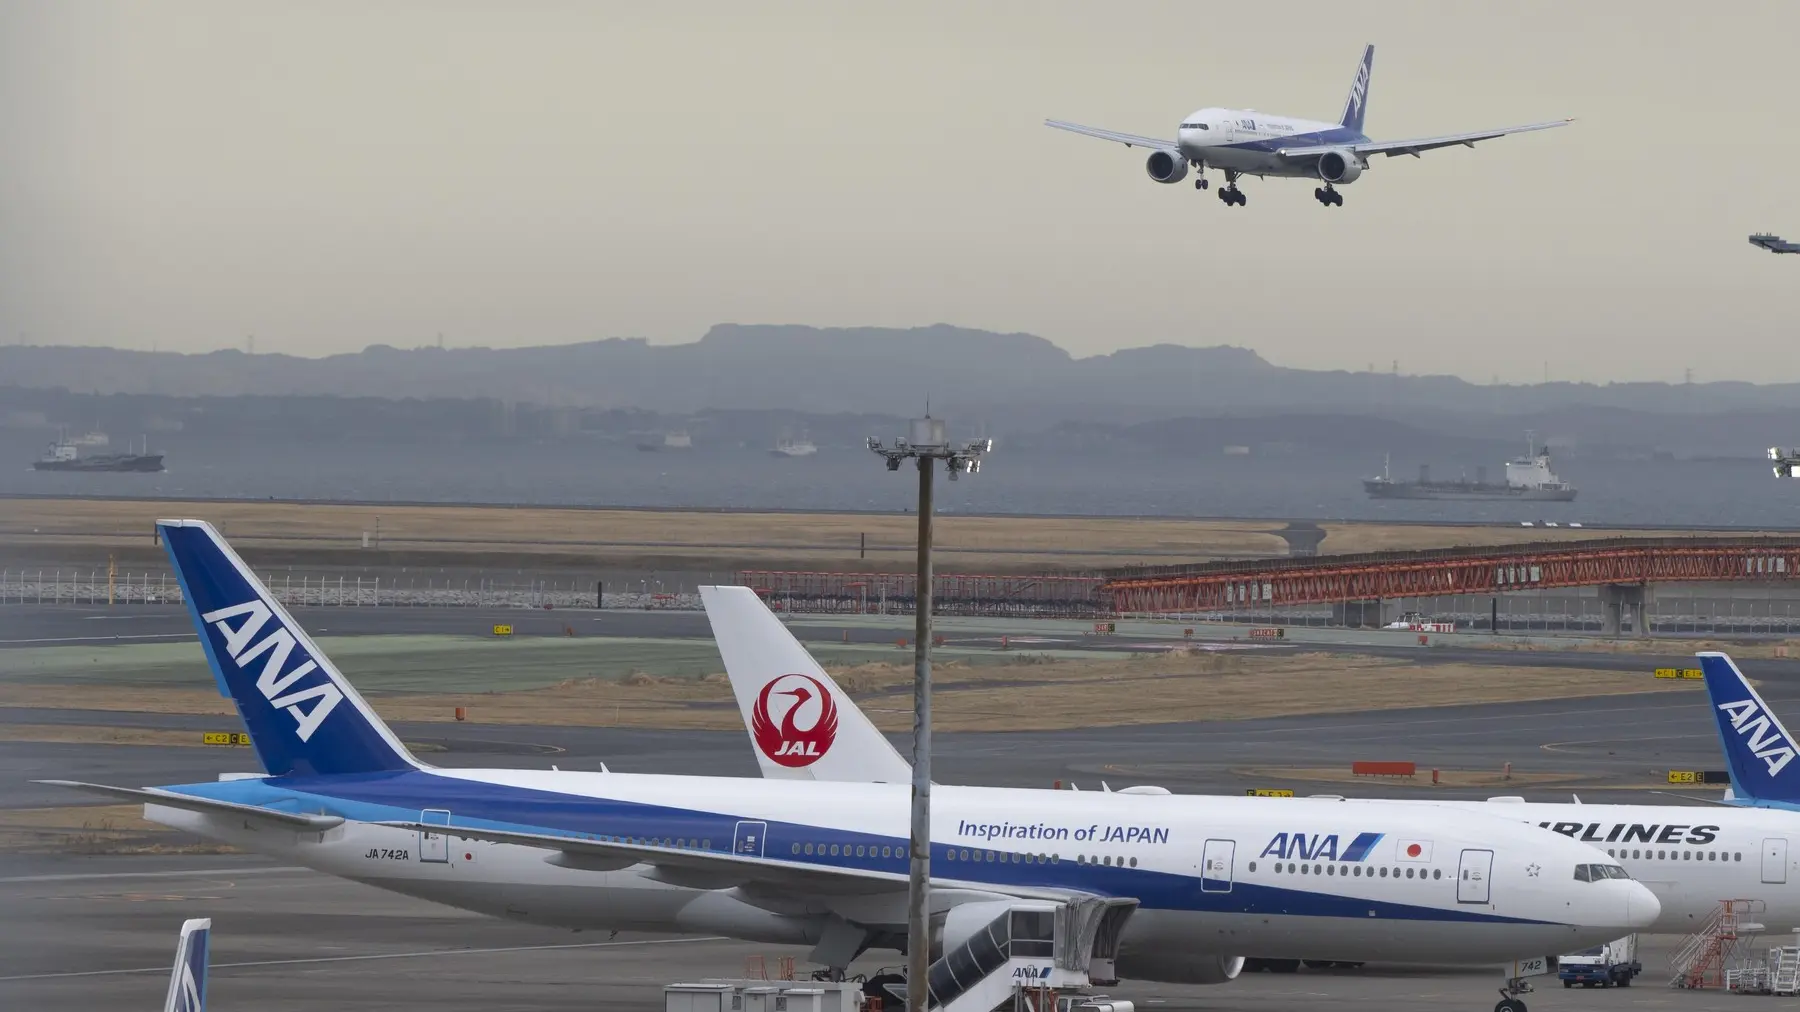 boing 777 kompanije ANA sleće u Tokio - 2 mart 2023 - profimedia-65a2a9c868dfb.webp